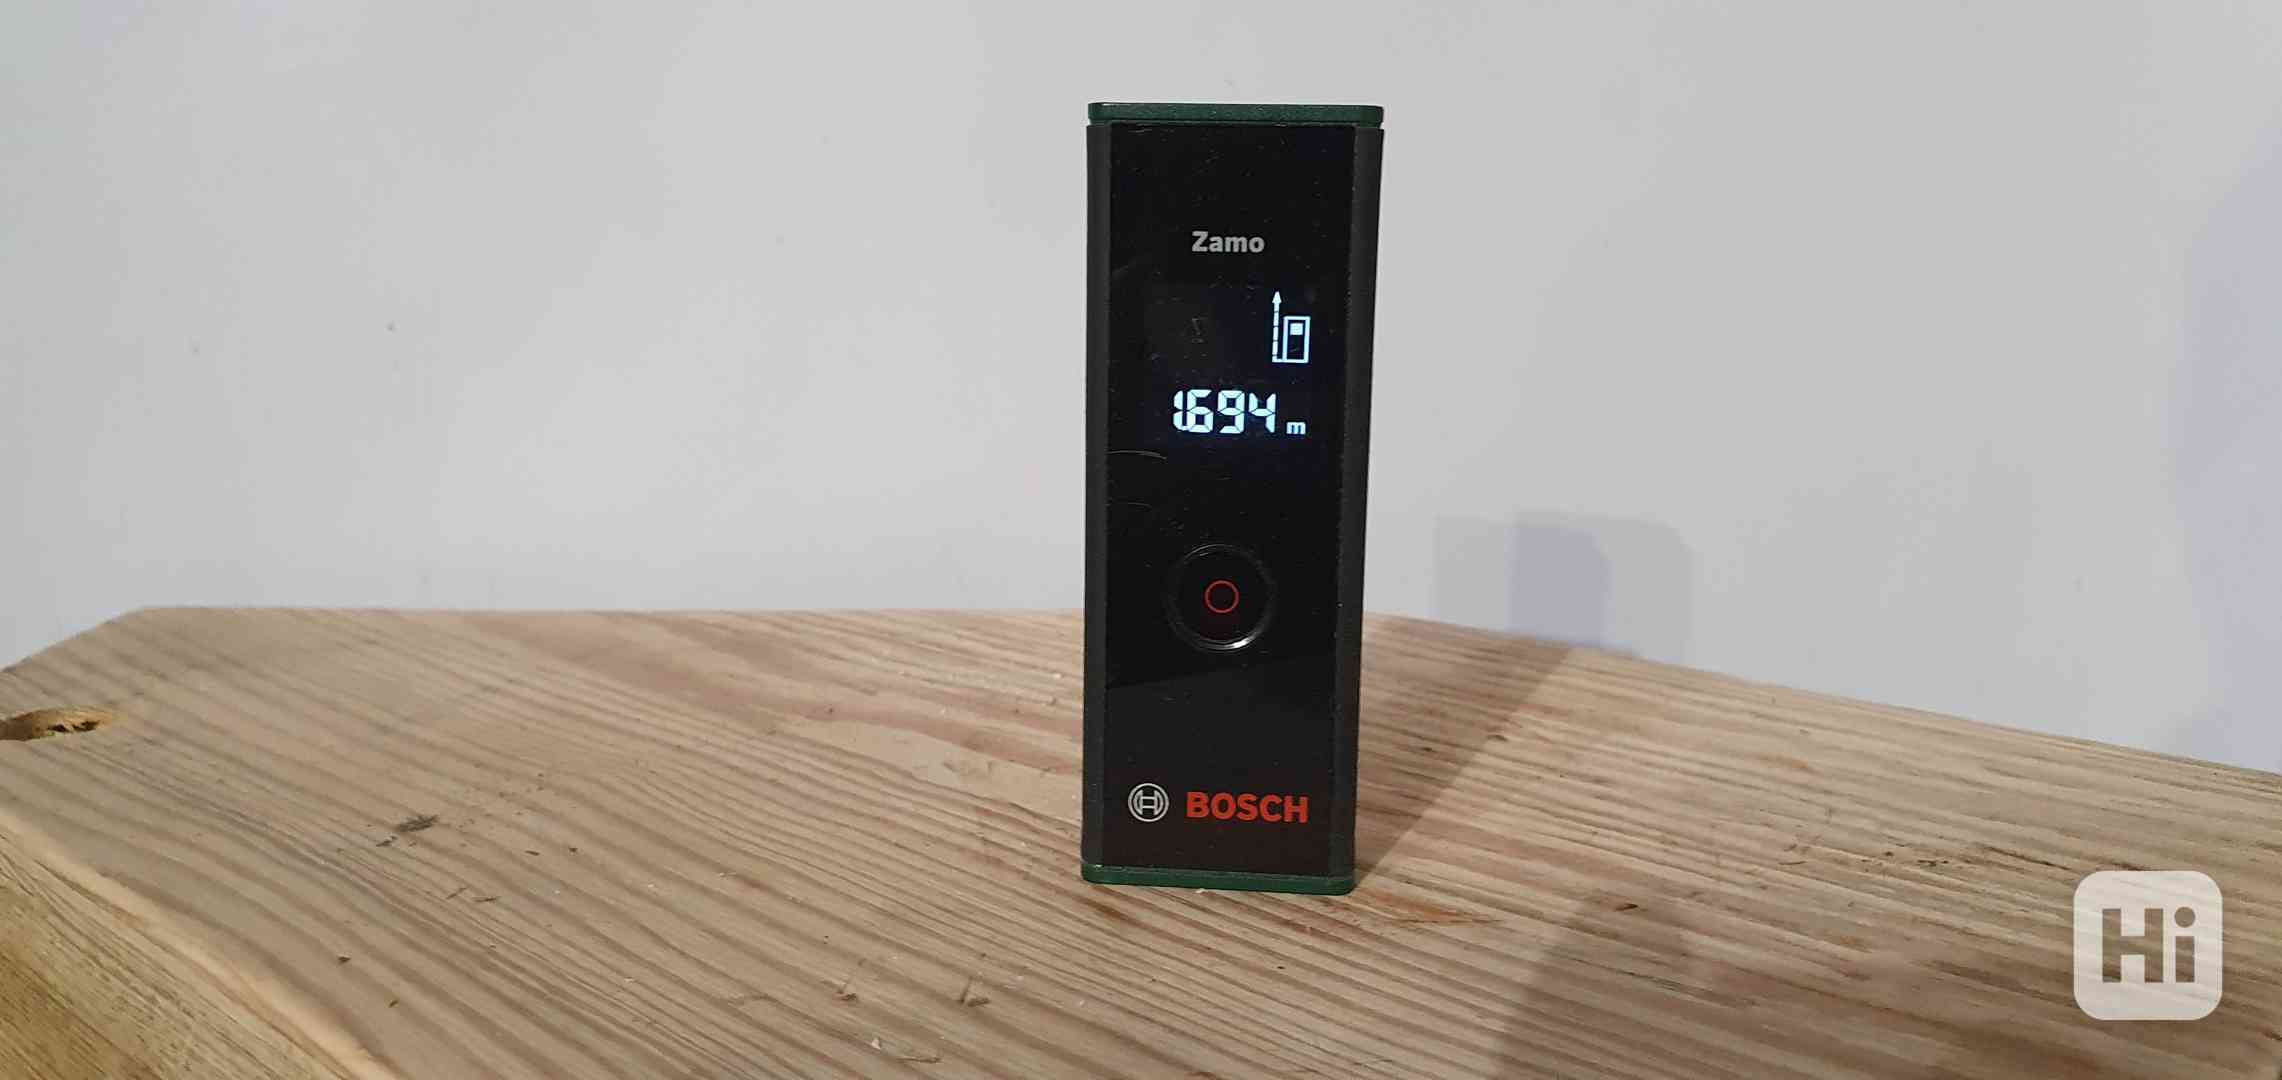 Laserový dálkomer Bosch Zamo - v záruce - foto 1